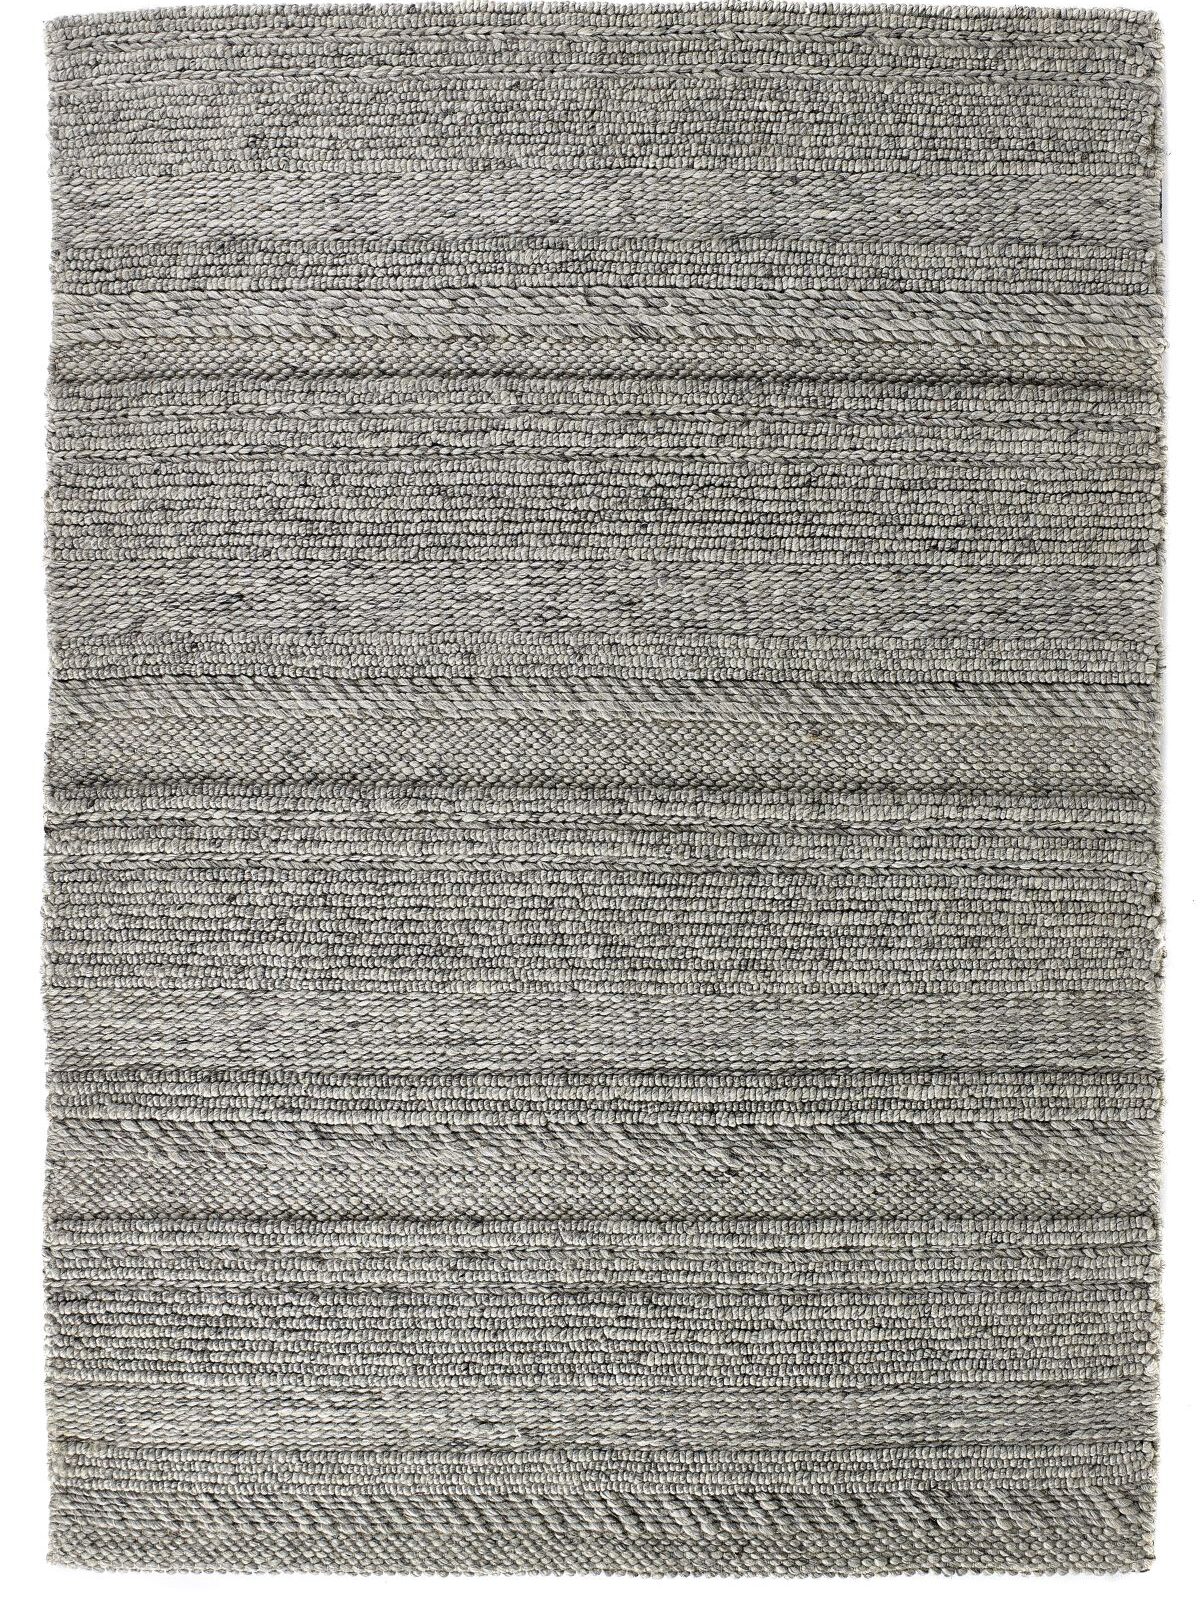 origin-rug-chunky-knit-natural-grey